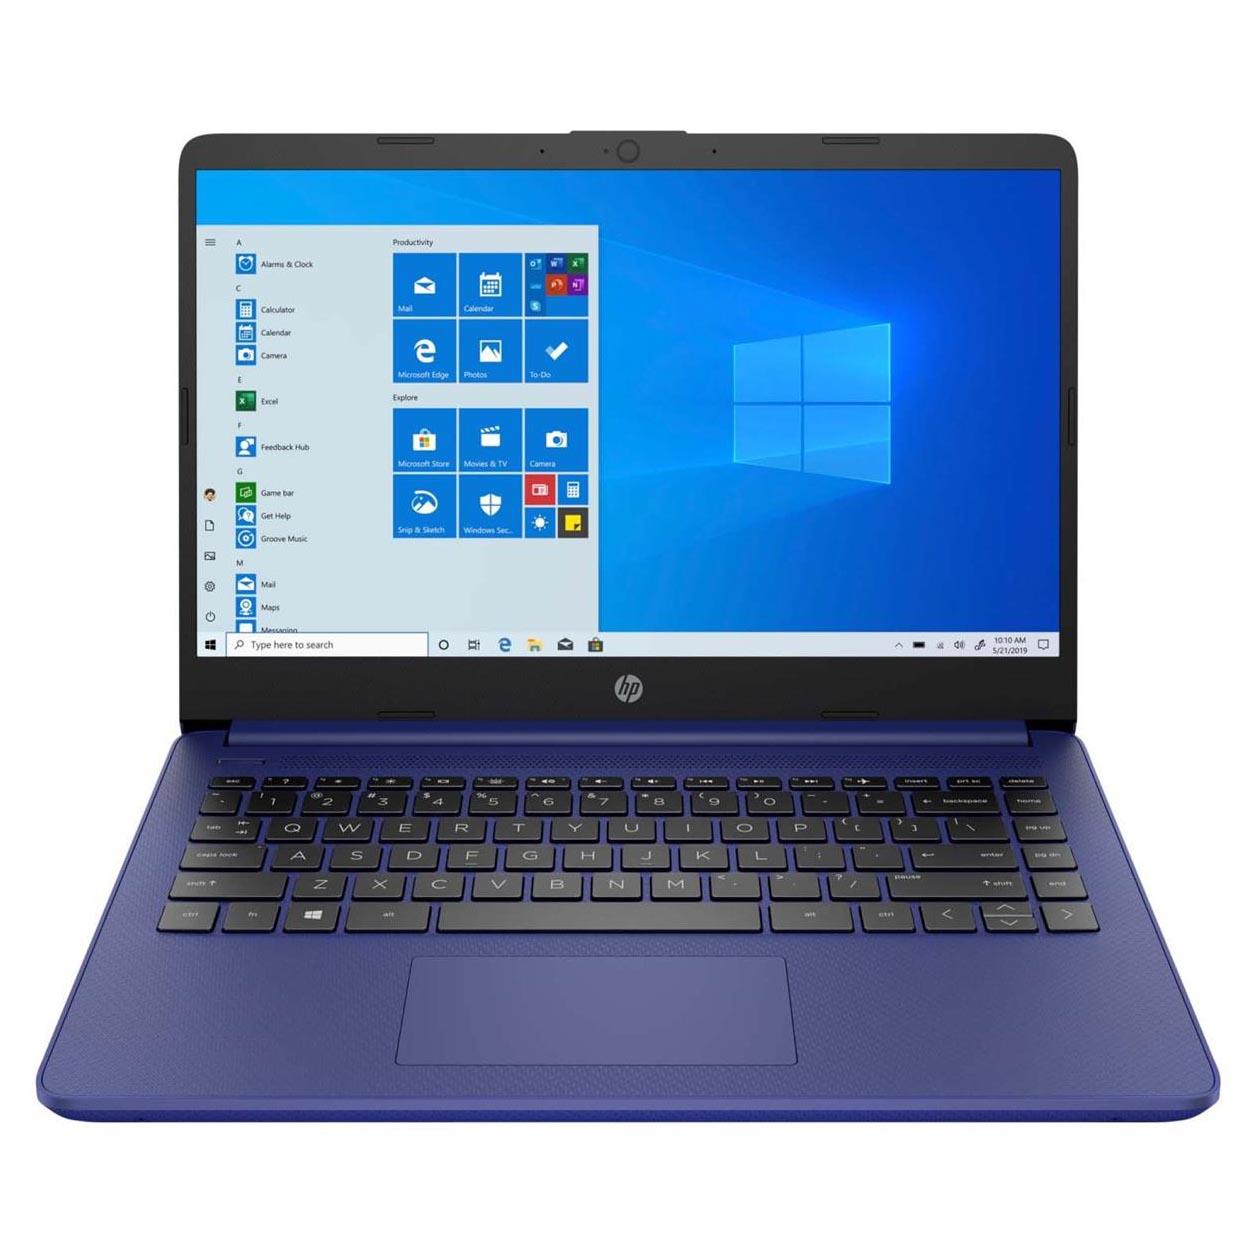 Ноутбук HP 14-dq0050nr, 14 HD Сенсорный, 4Гб/64Гб, Celeron N4020, сине-фиолетовый, английская клавиатура ноутбук hp laptop 14 dq0055dx 14 4гб 64гб intel celeron n4120 intel uhd graphics синий английская клавиатура